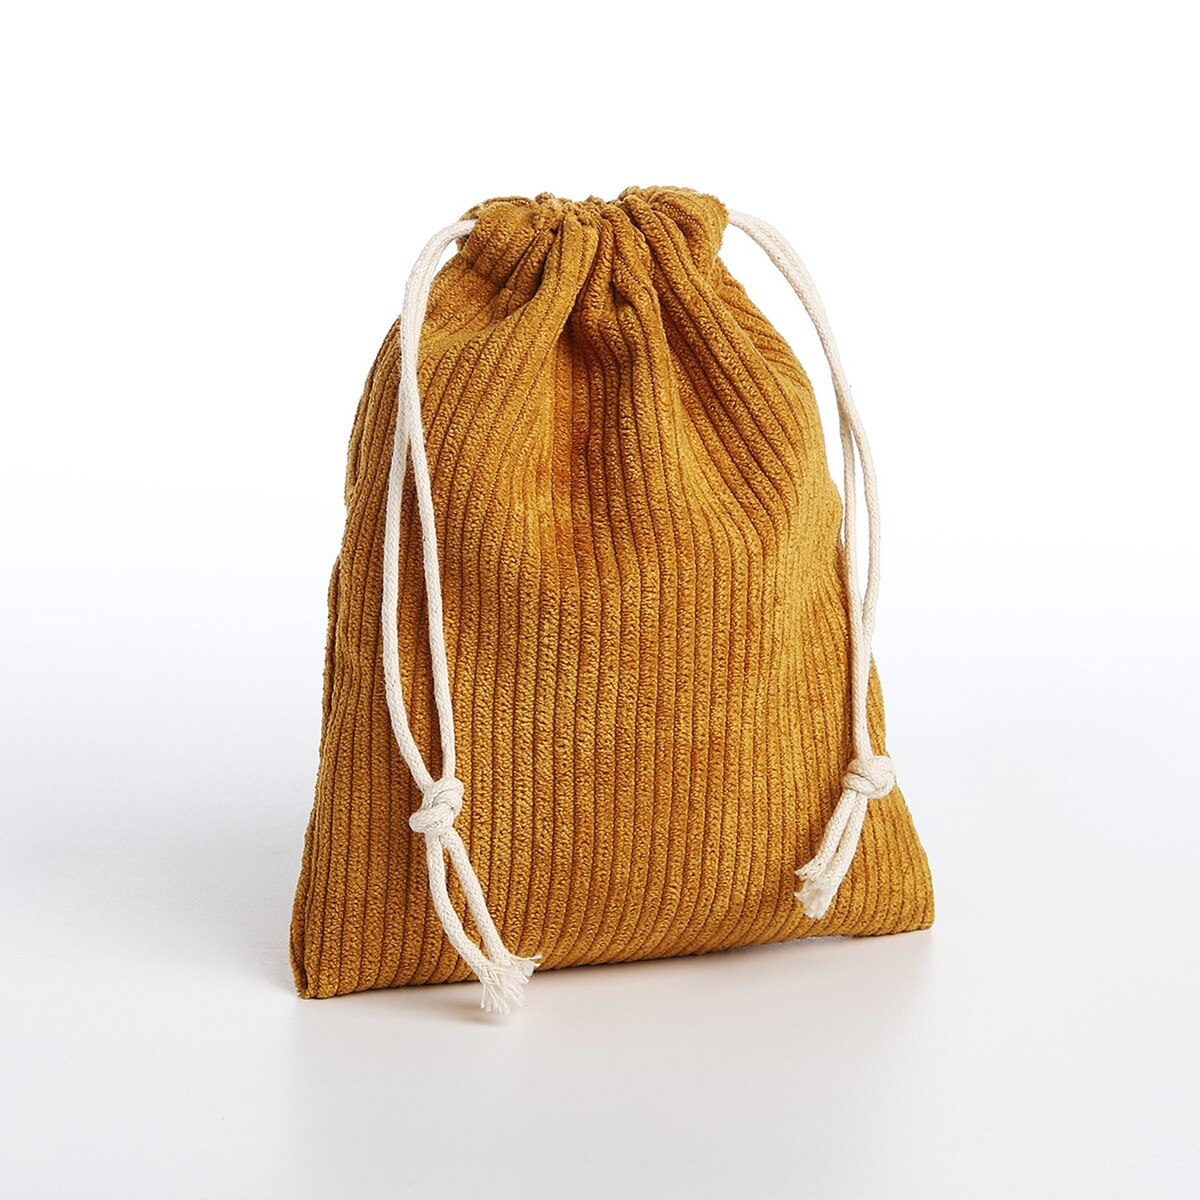 Косметичка - мешок с завязками, цвет горчичный косметичка мешок с завязками горчичный